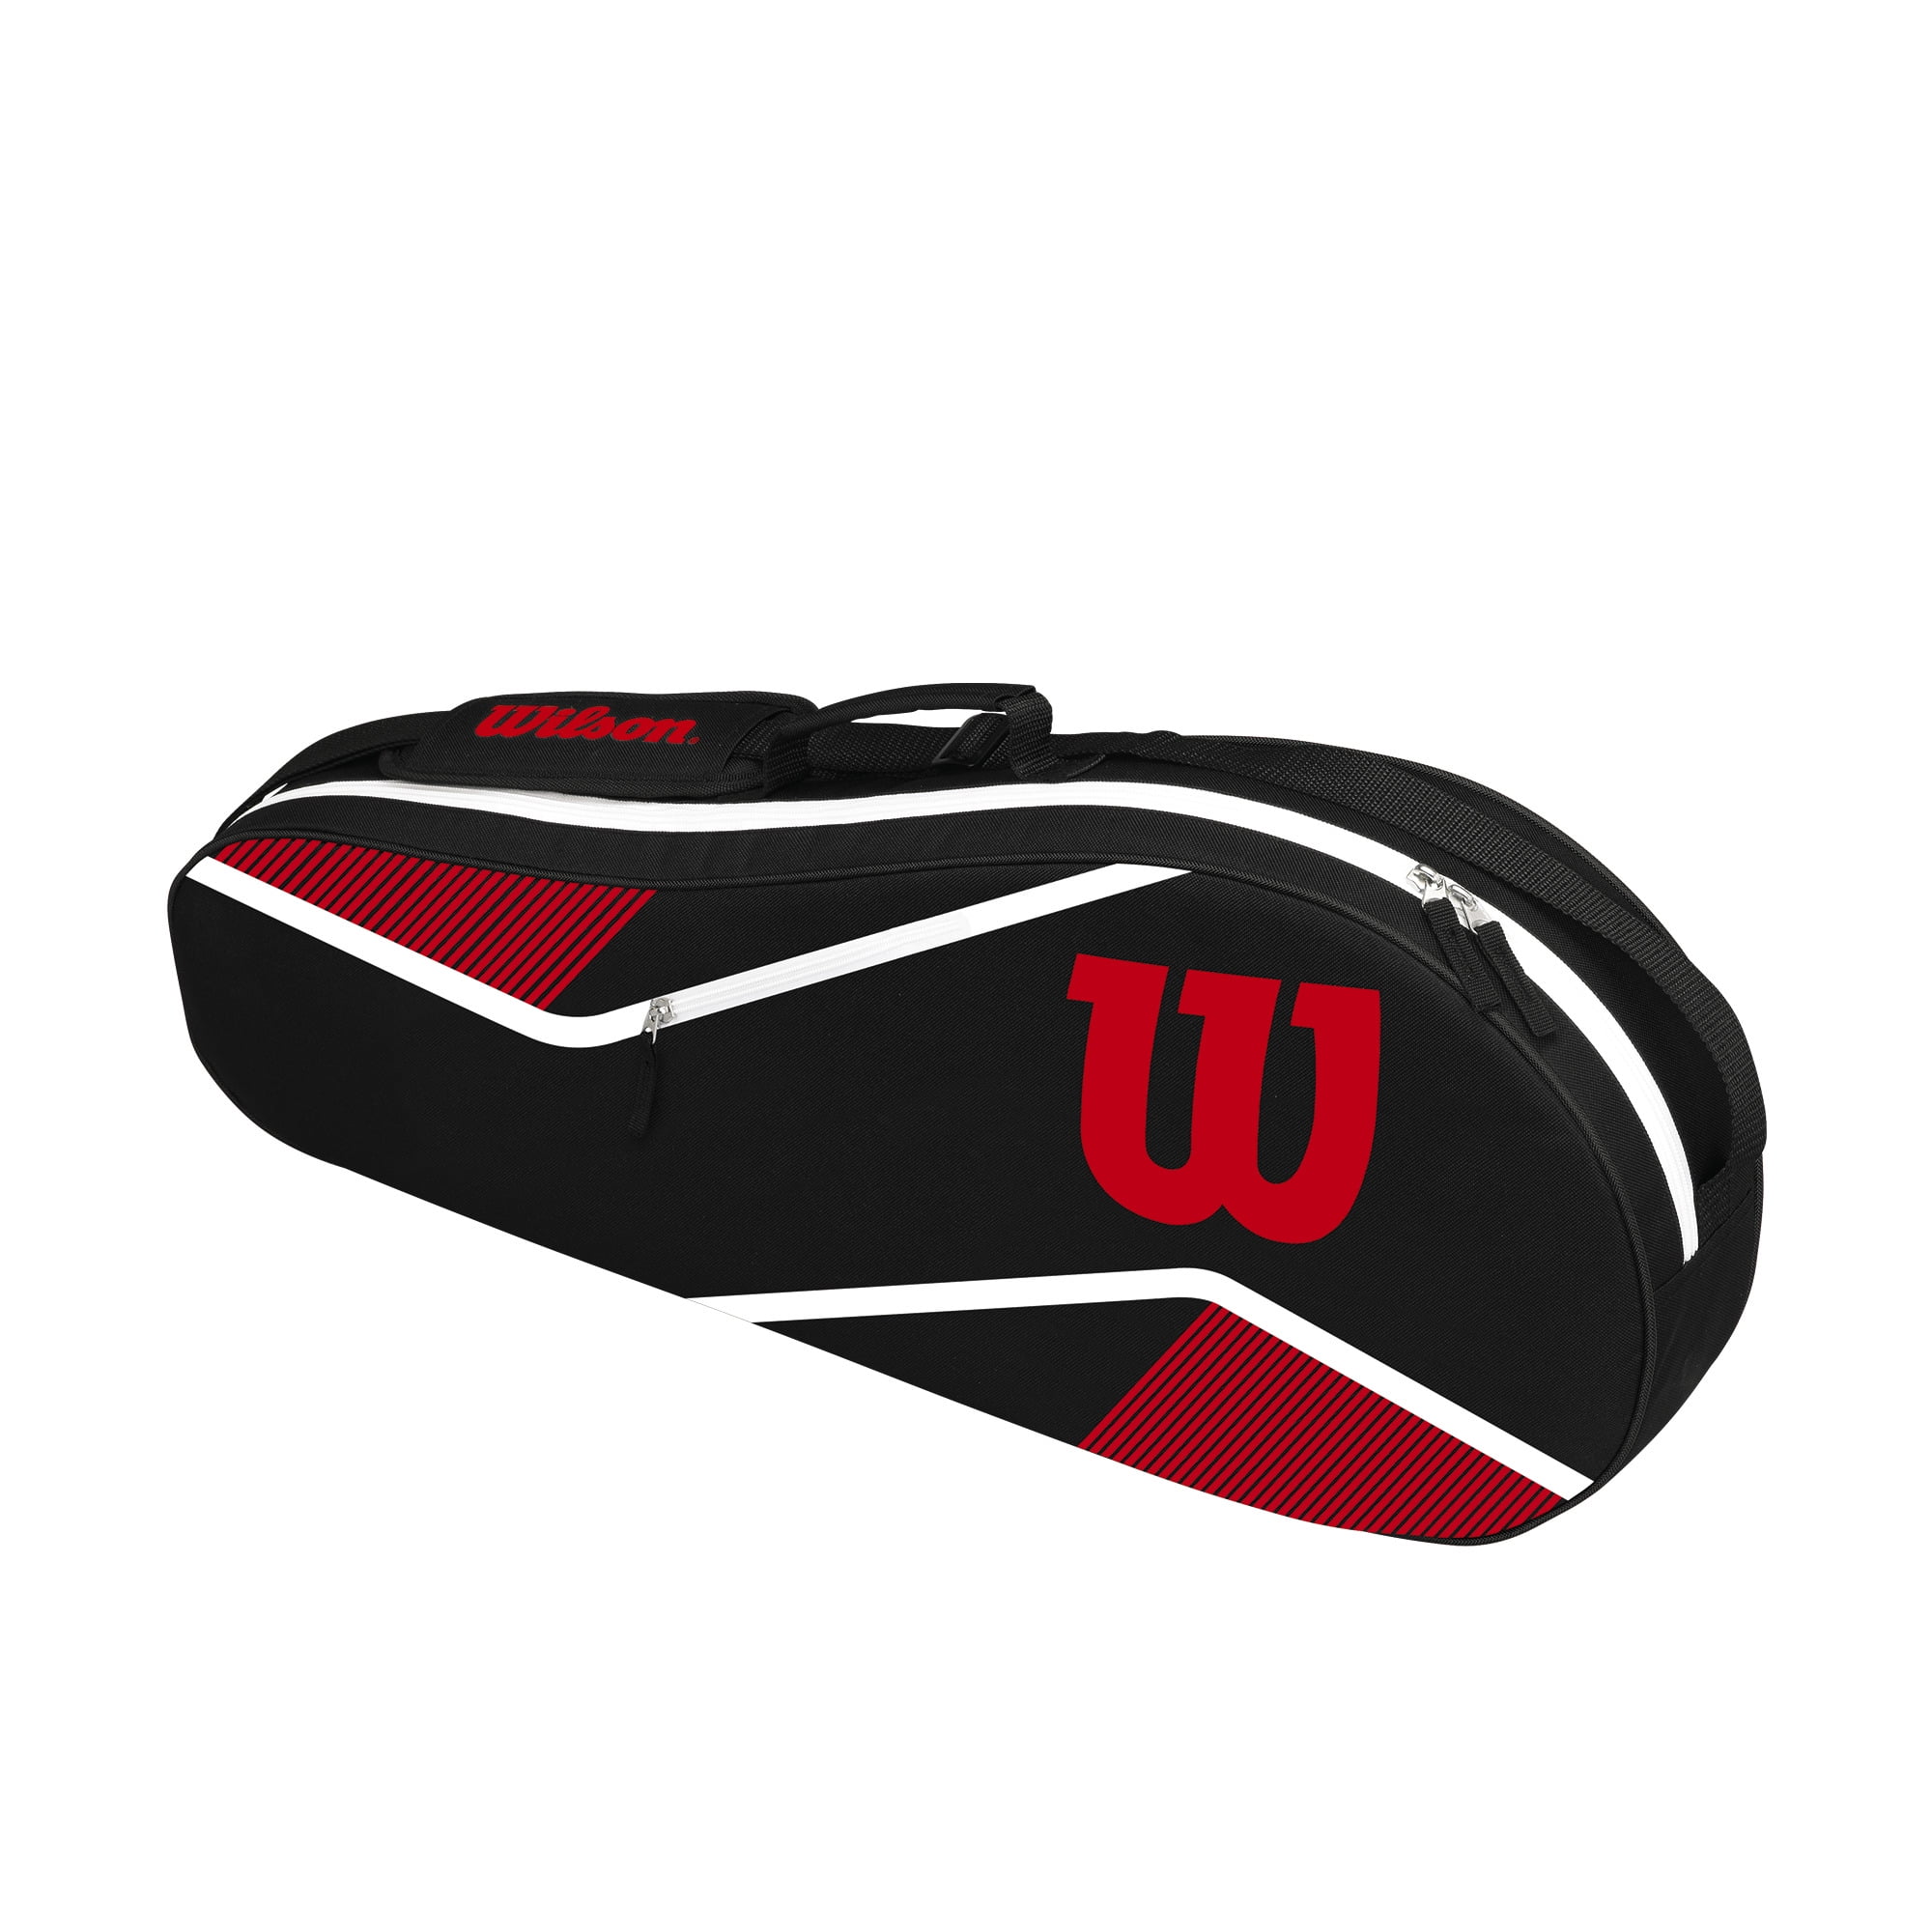 Red & White 28" x 12" x 3.5" NIB Wilson Tennis Equipment Bag  Black 